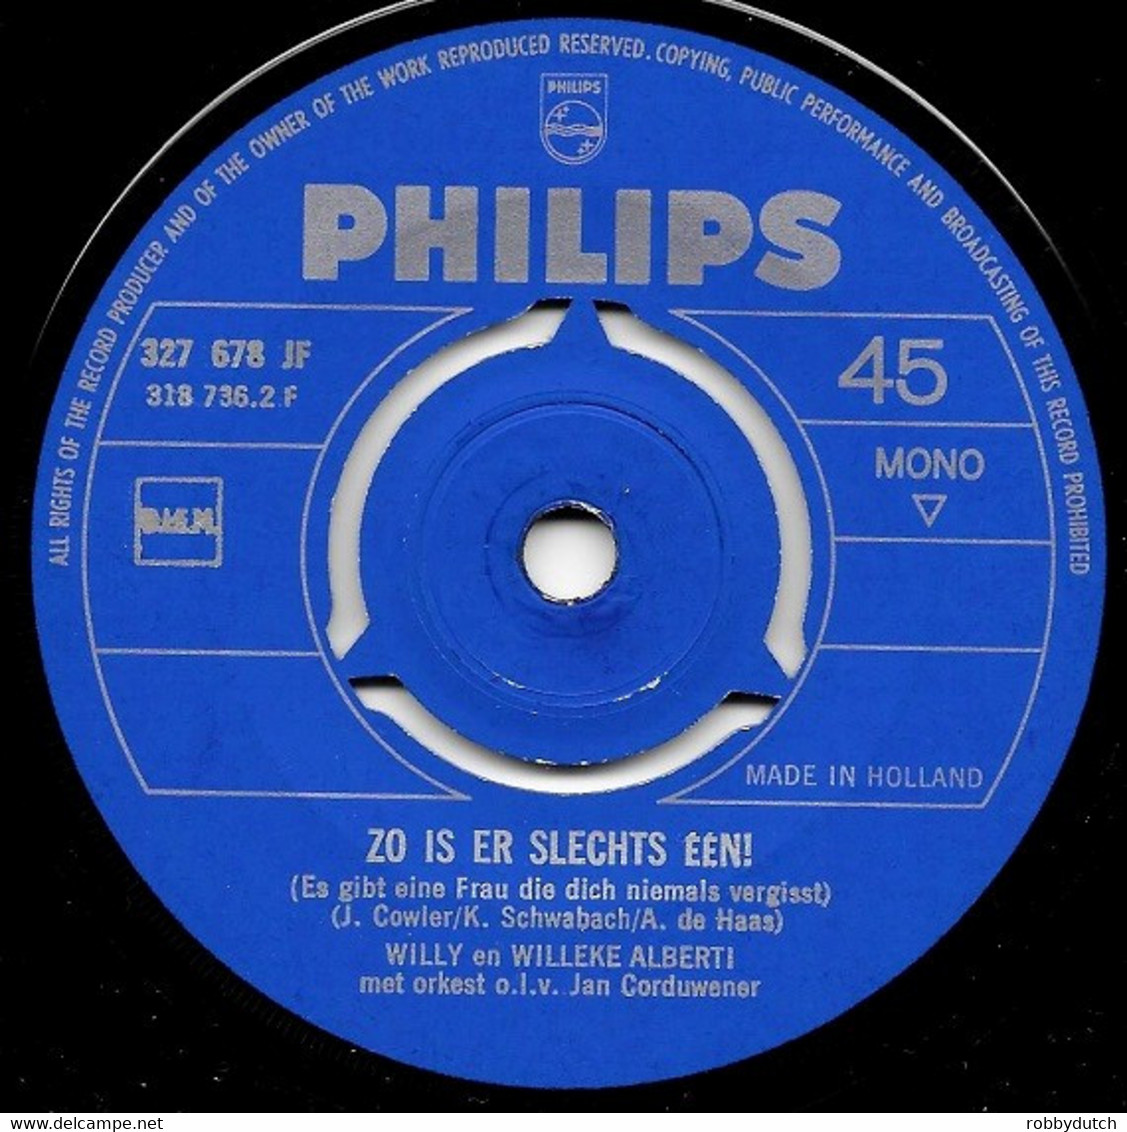 * 7" *  WILLY & WILLEKE ALBERTI - MOEDER HOE KAN IK JE DANKEN (Holland 1964) - Sonstige - Niederländische Musik